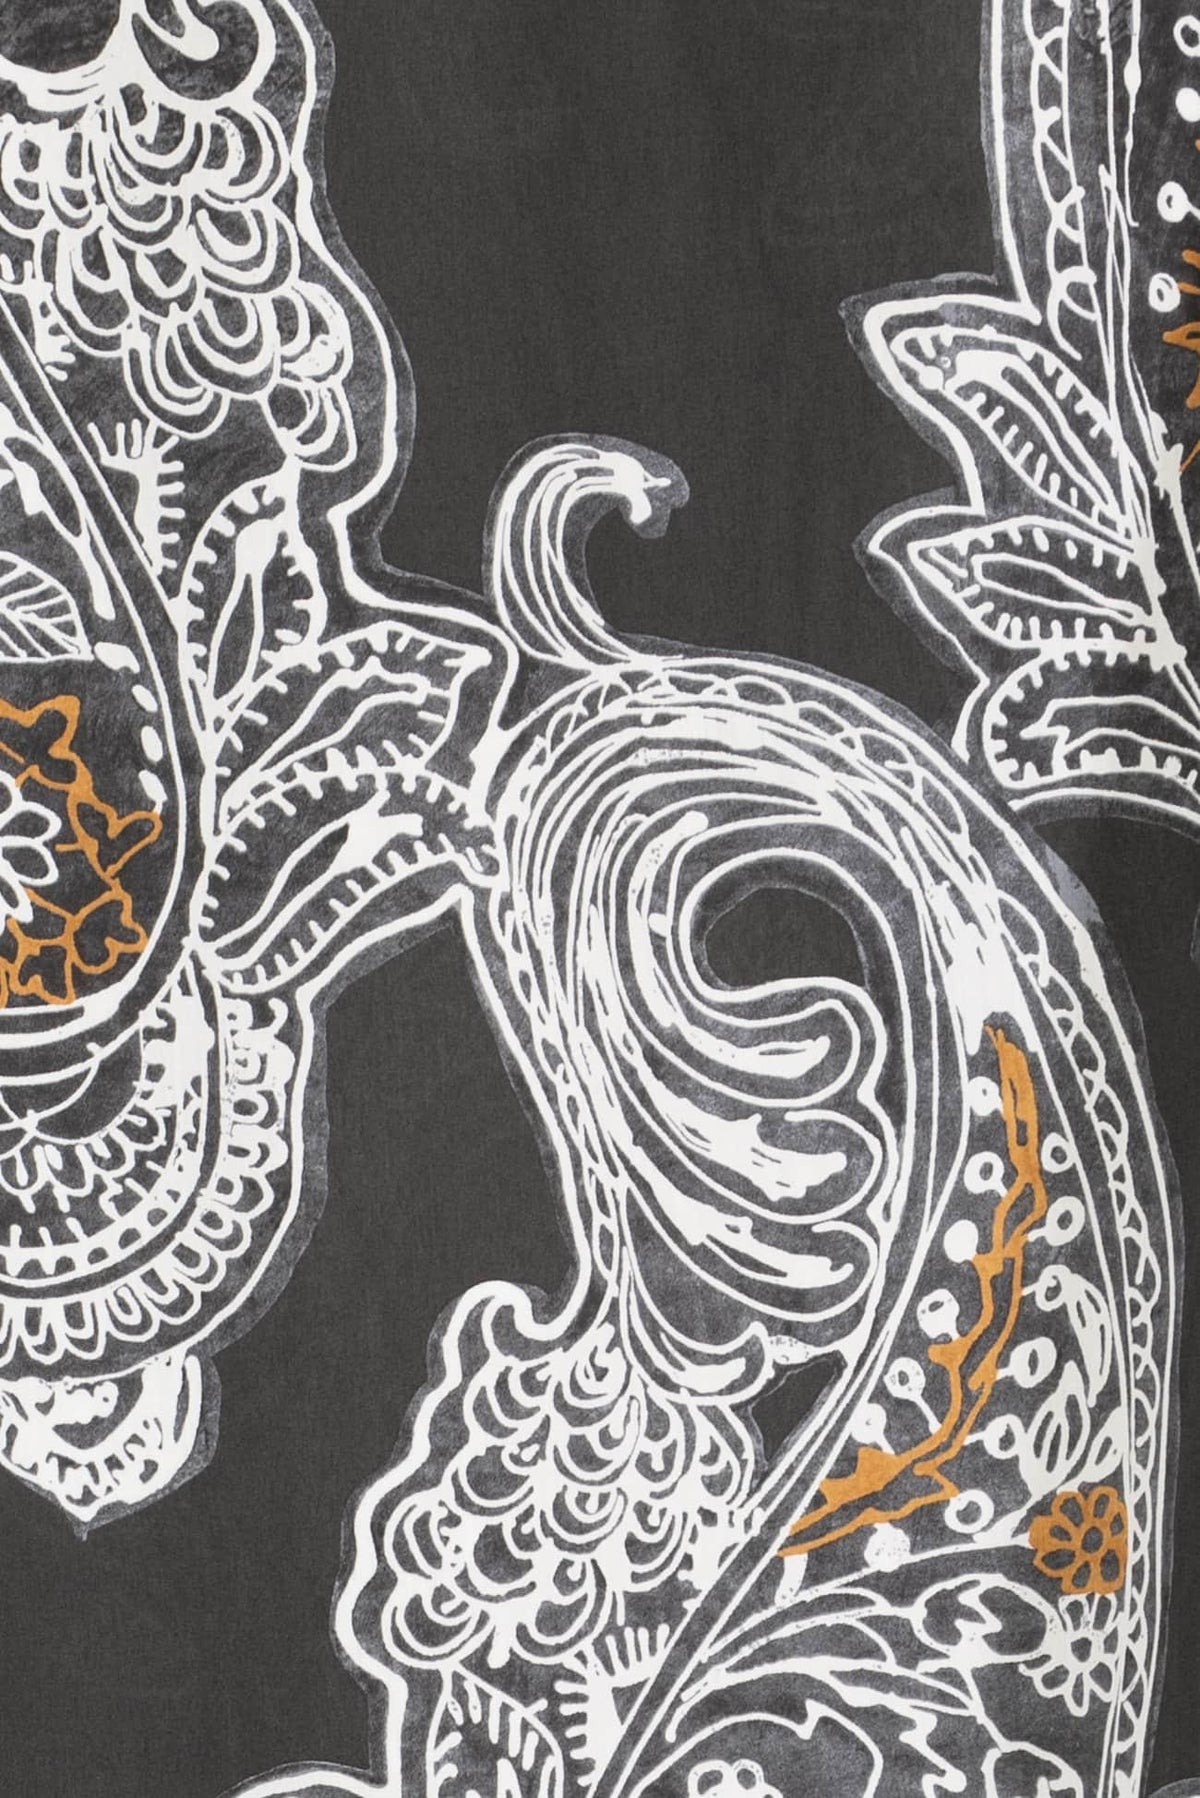 Arabesque Italian Cotton Woven - Marcy Tilton Fabrics